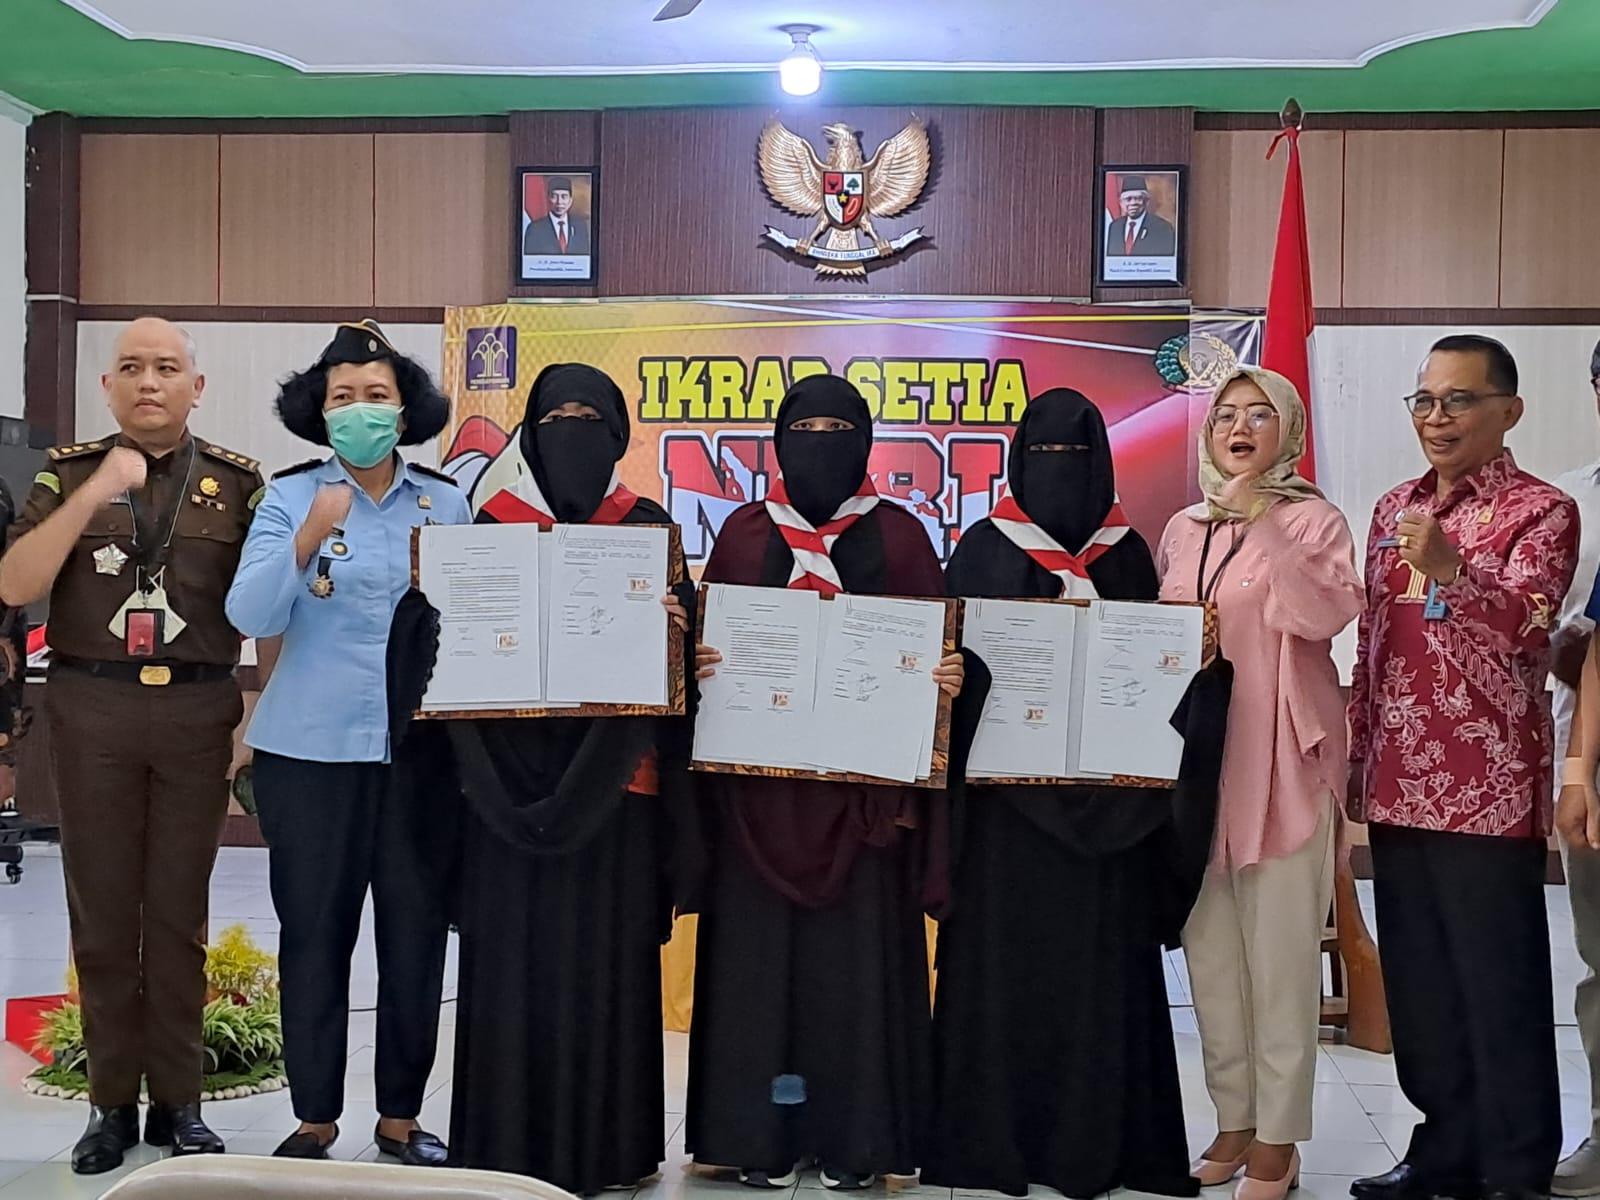 Tiga Ibu Berstatus Napi Terorisme LPP Semarang Ikrar Setia NKRI